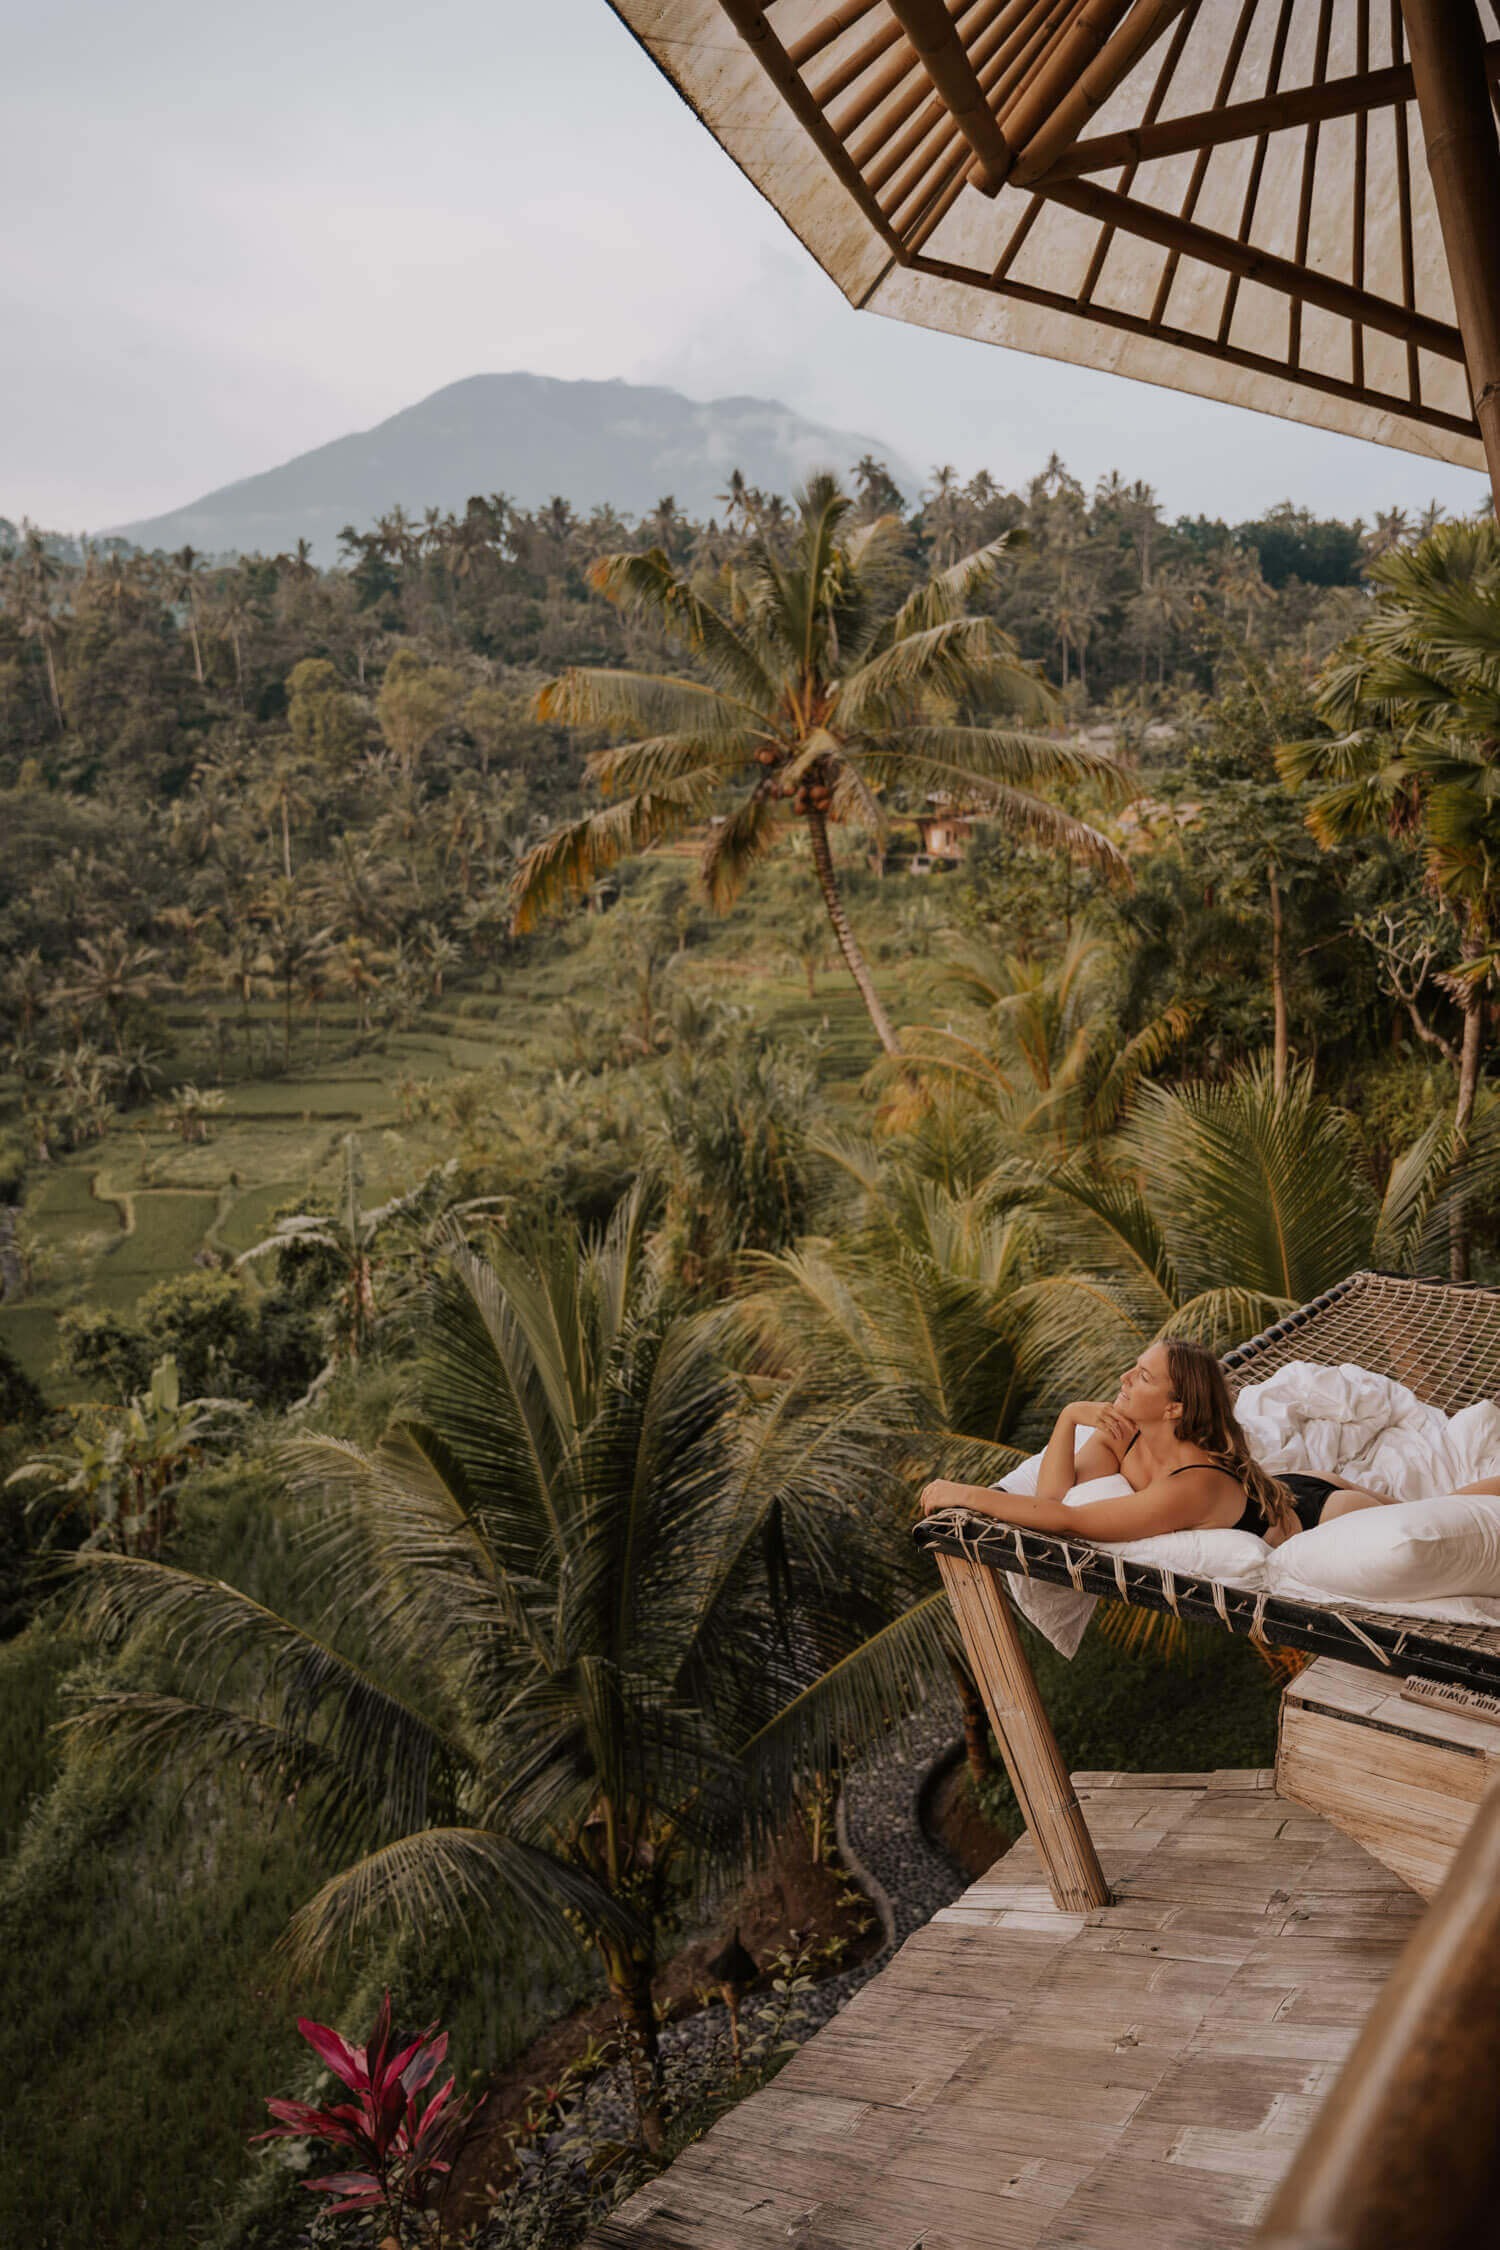 Bali Instagram Spots